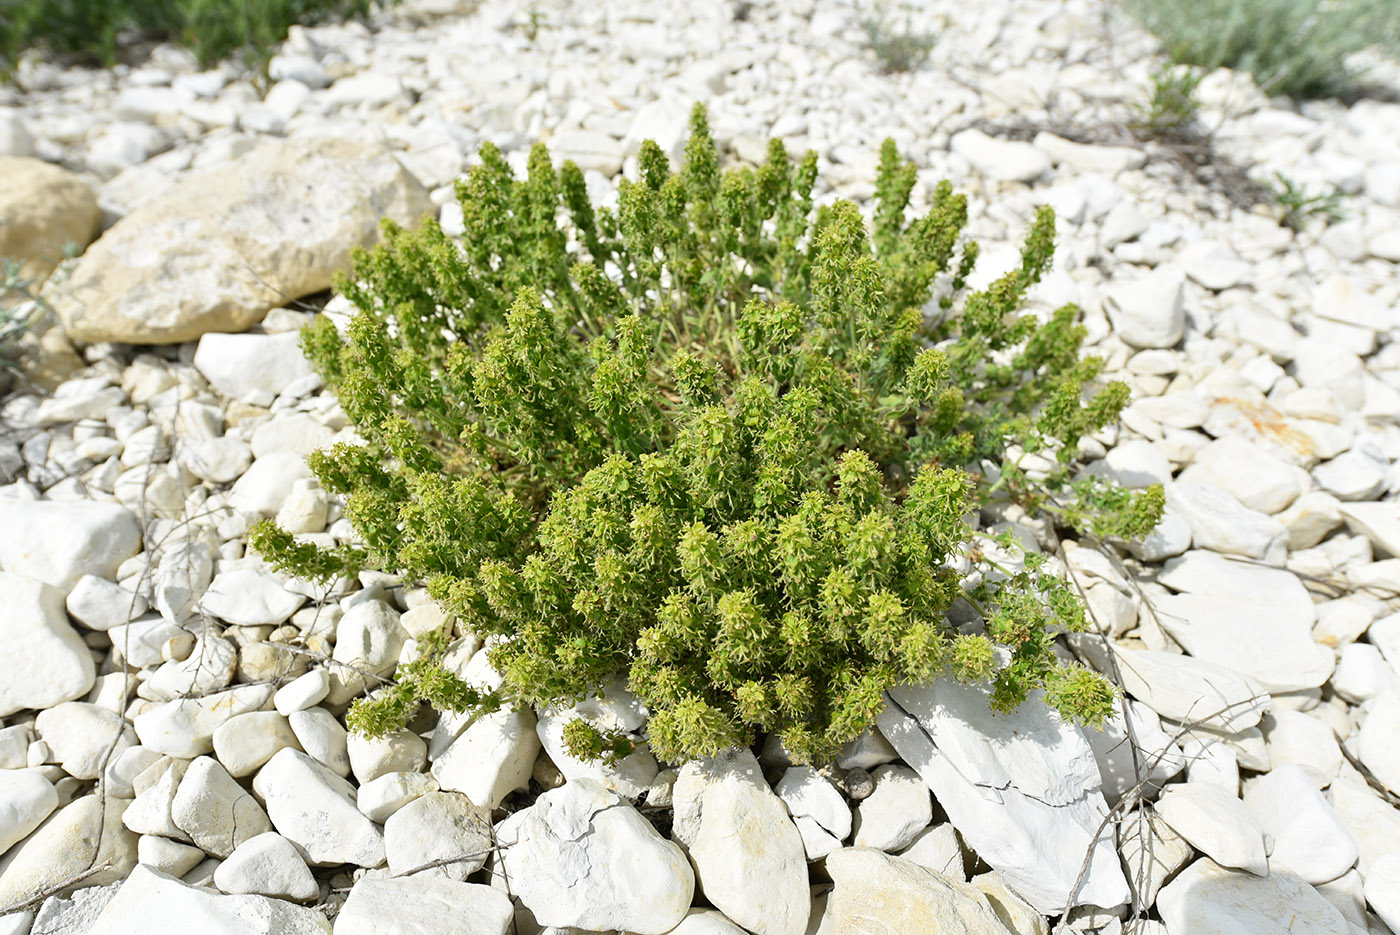 Image of Cruciata taurica specimen.